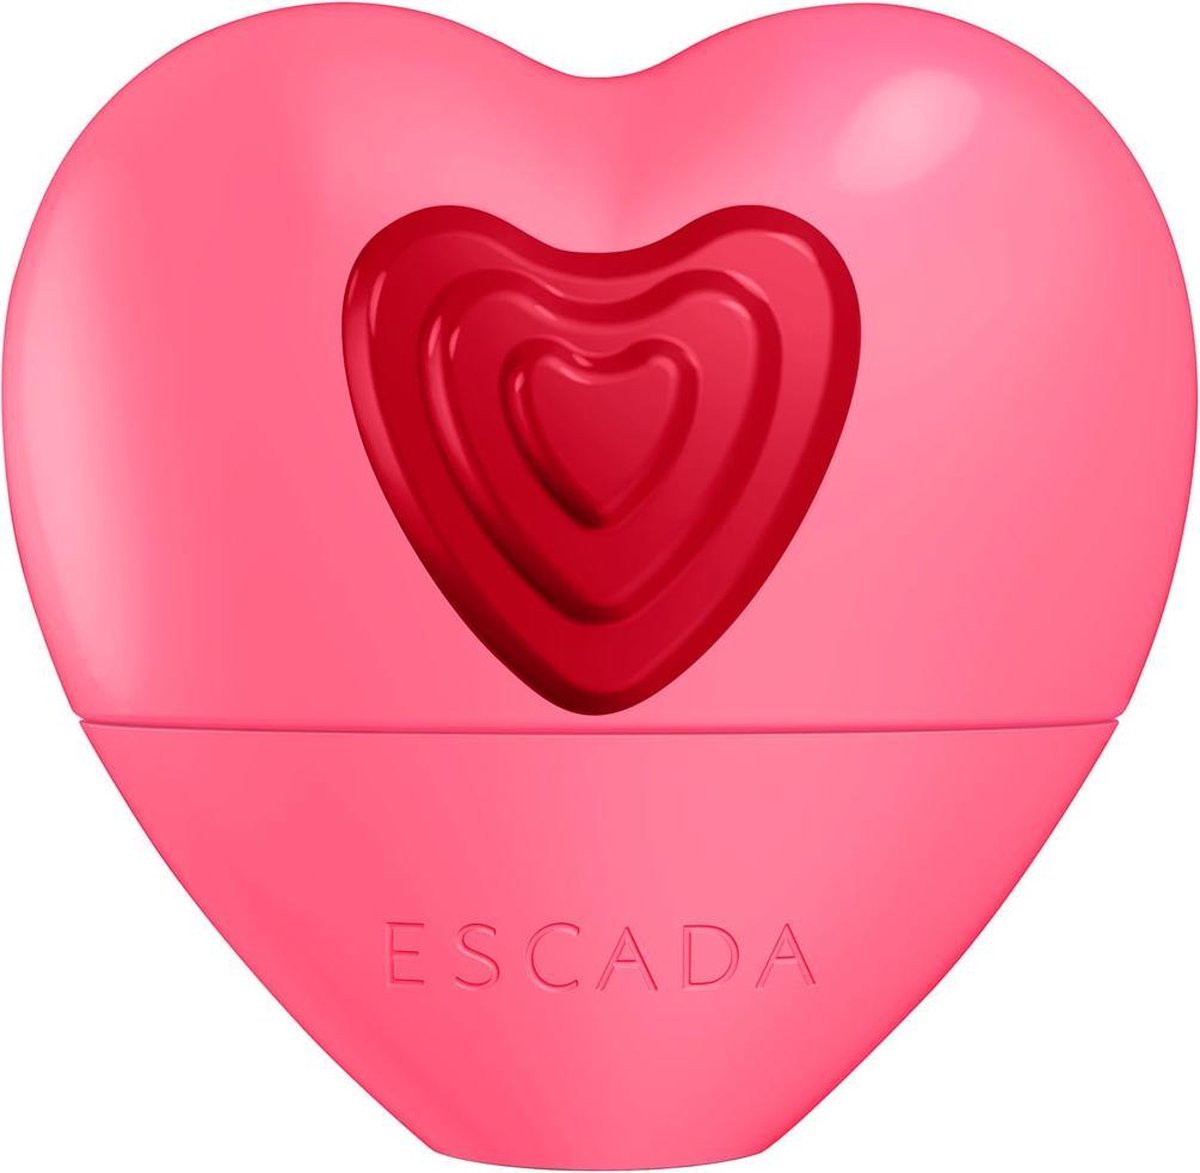 Escada Candy Love Eau de toilette spray - 30 ml